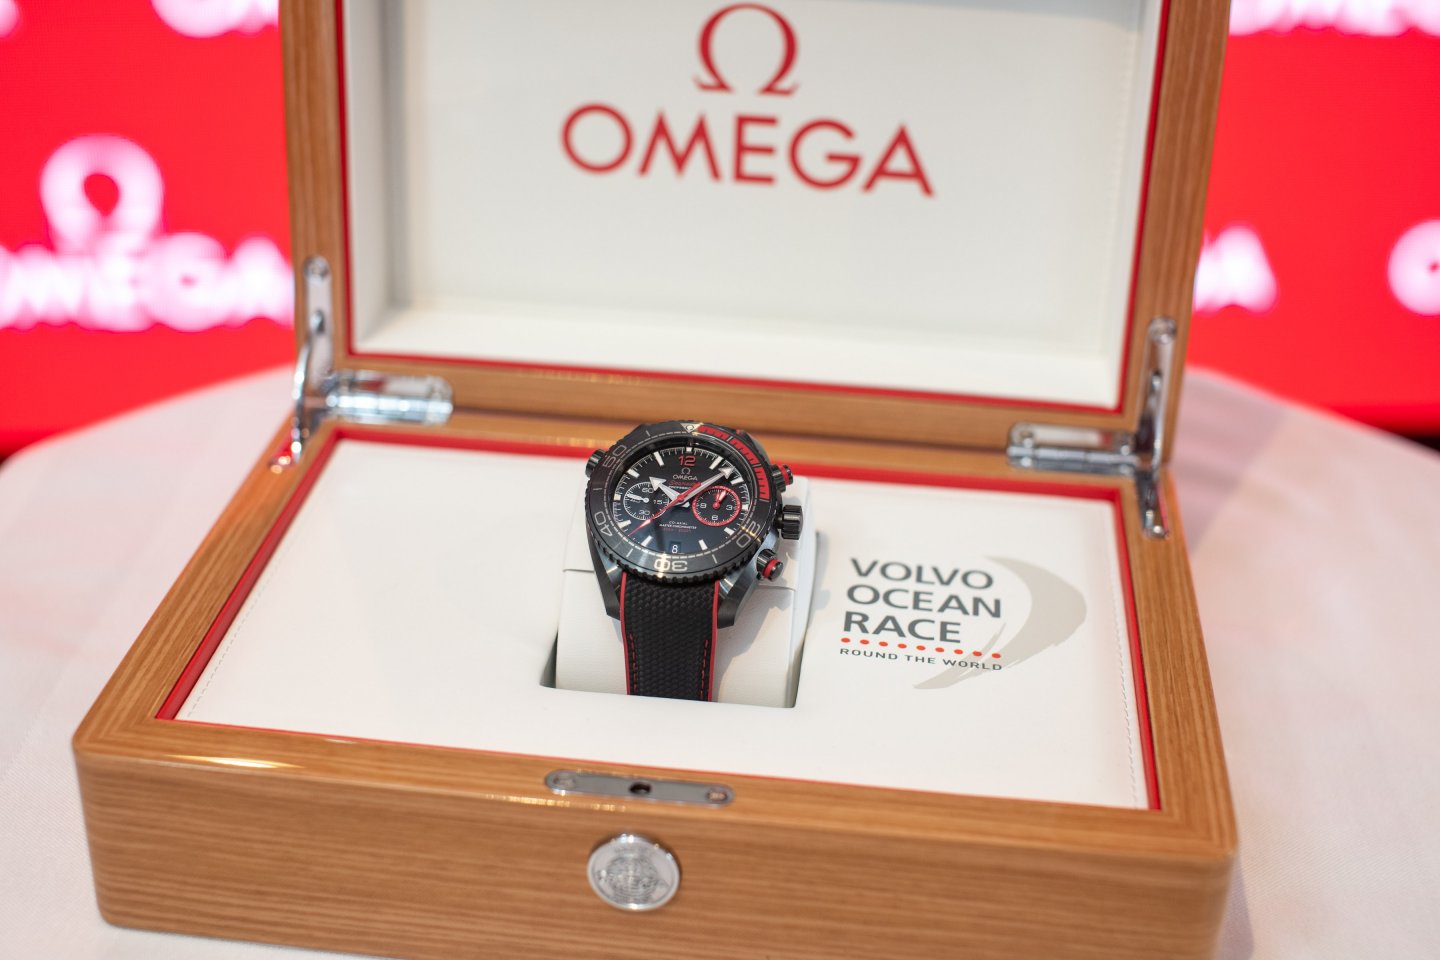 オメガ、ボルボ･オーシャンレースの優勝者に贈呈する時計を発表